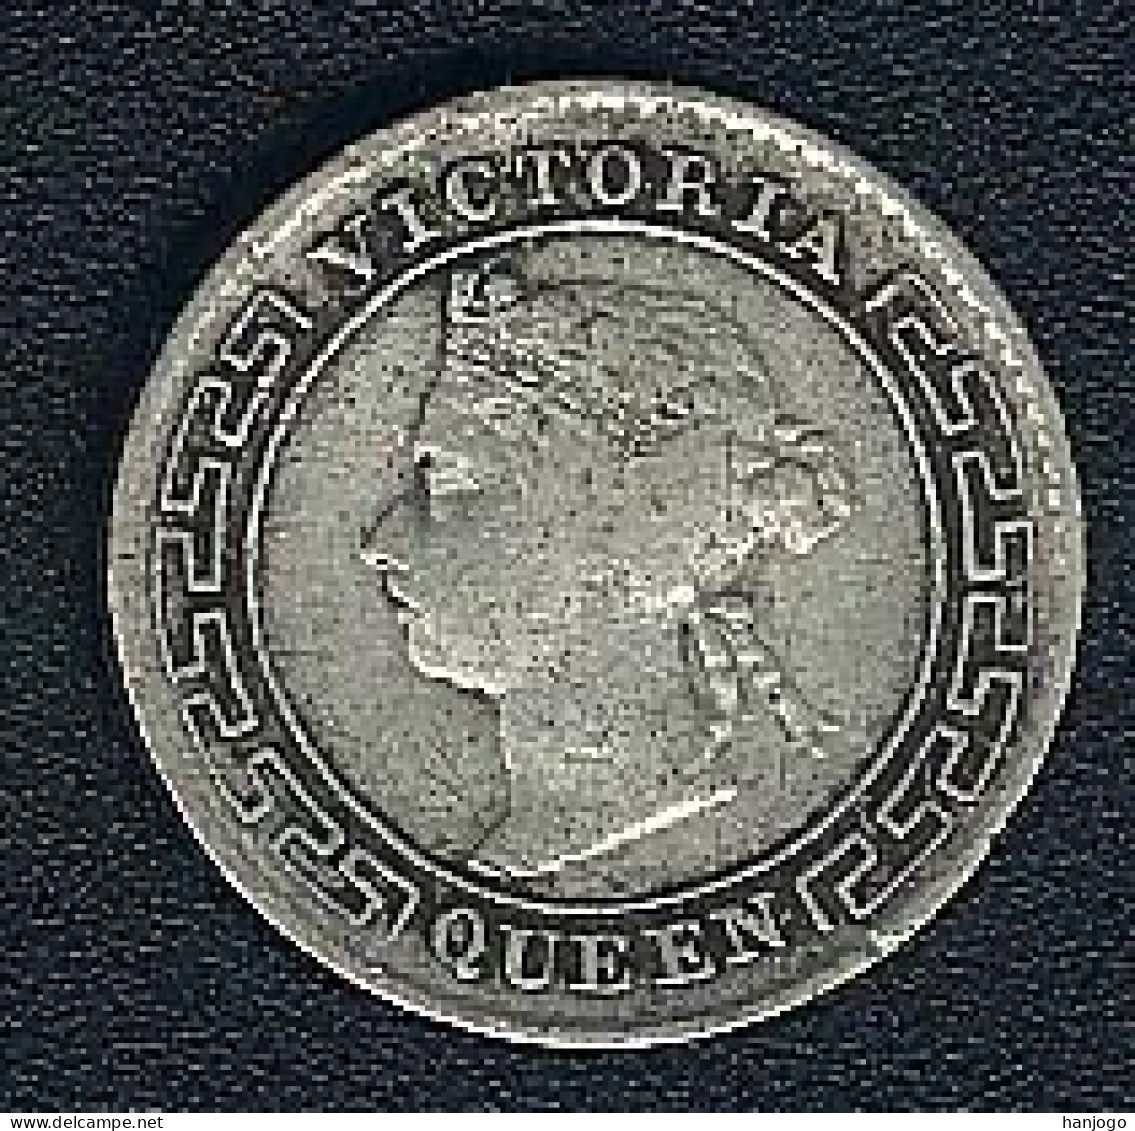 Ceylon (Sri Lanka), 10 Cents 1899, Silber - Sri Lanka